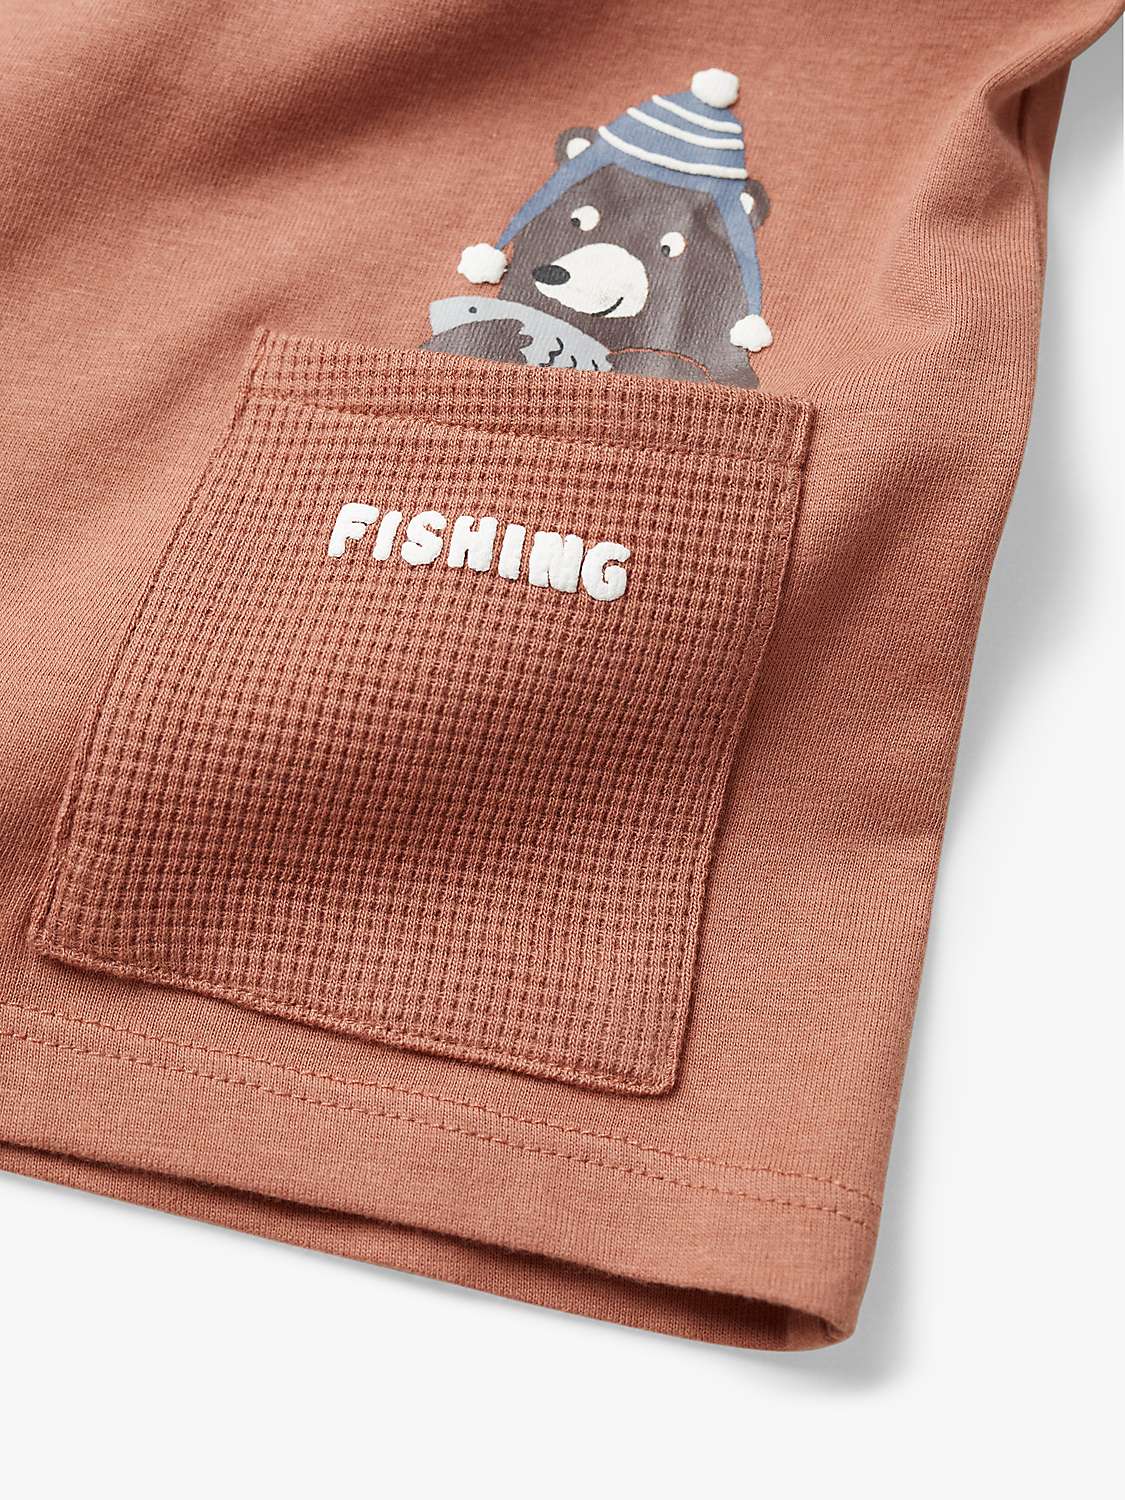 Buy Mango Kids' Fishing Long Sleeve T-Shirt, Orange Online at johnlewis.com